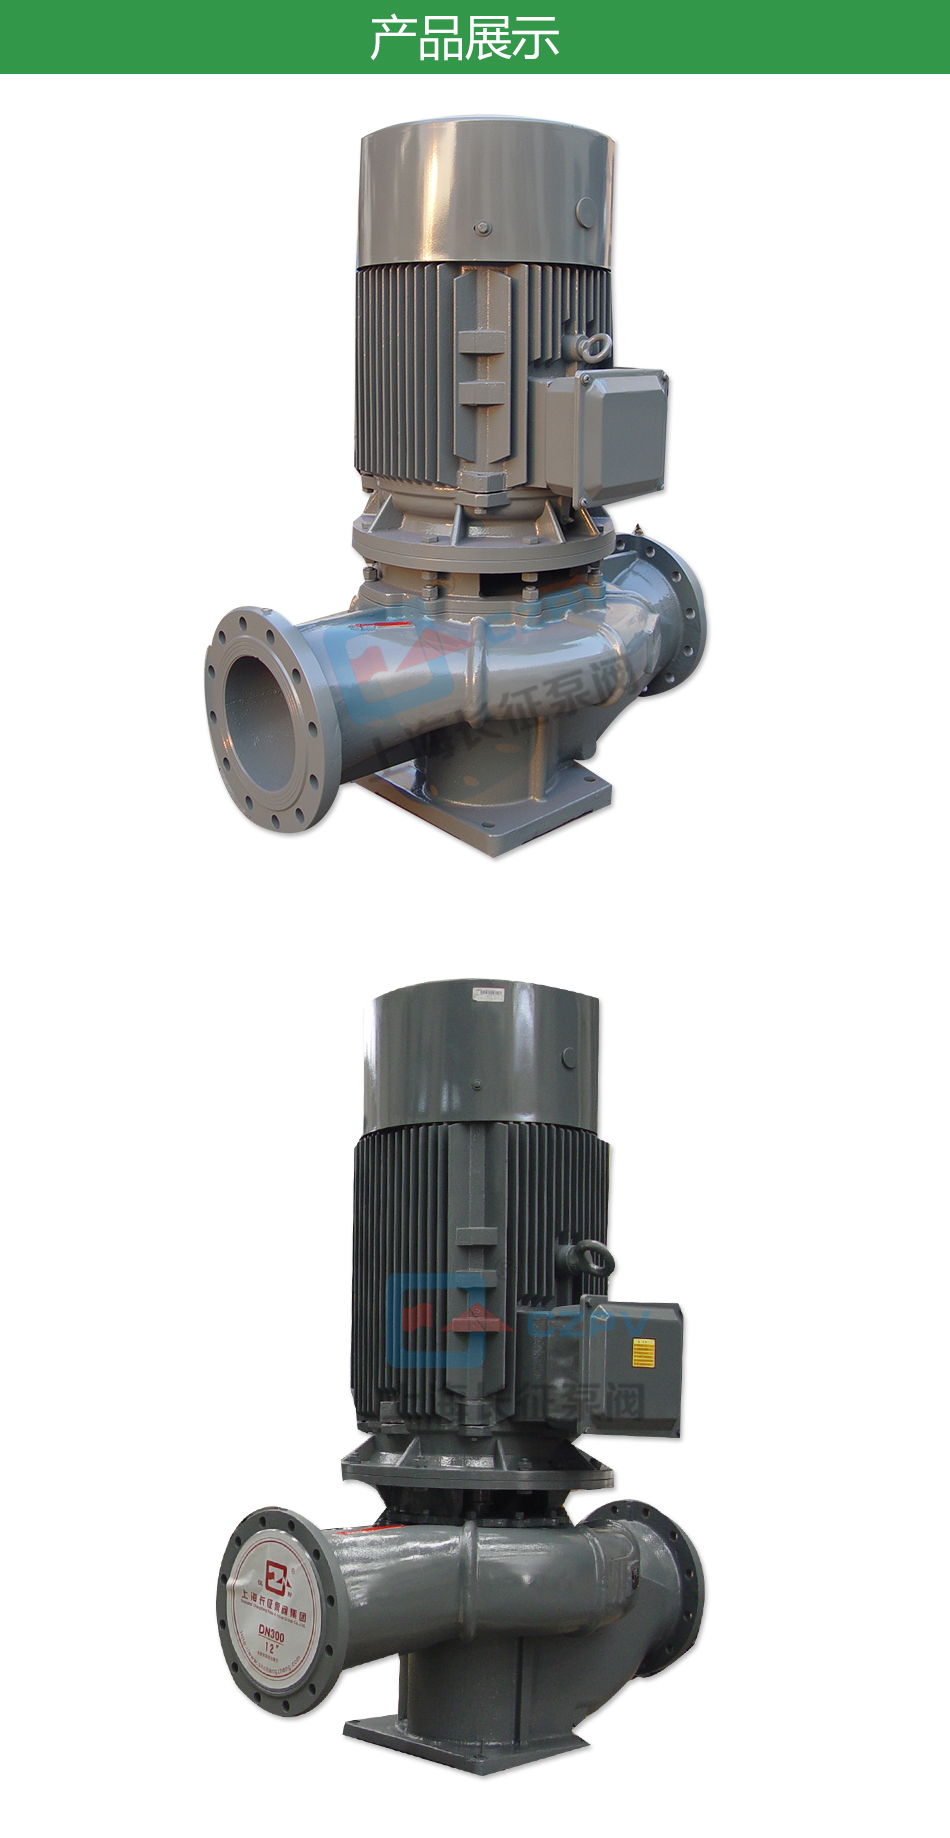 LTP立式高效節能循環水泵產品展示圖片